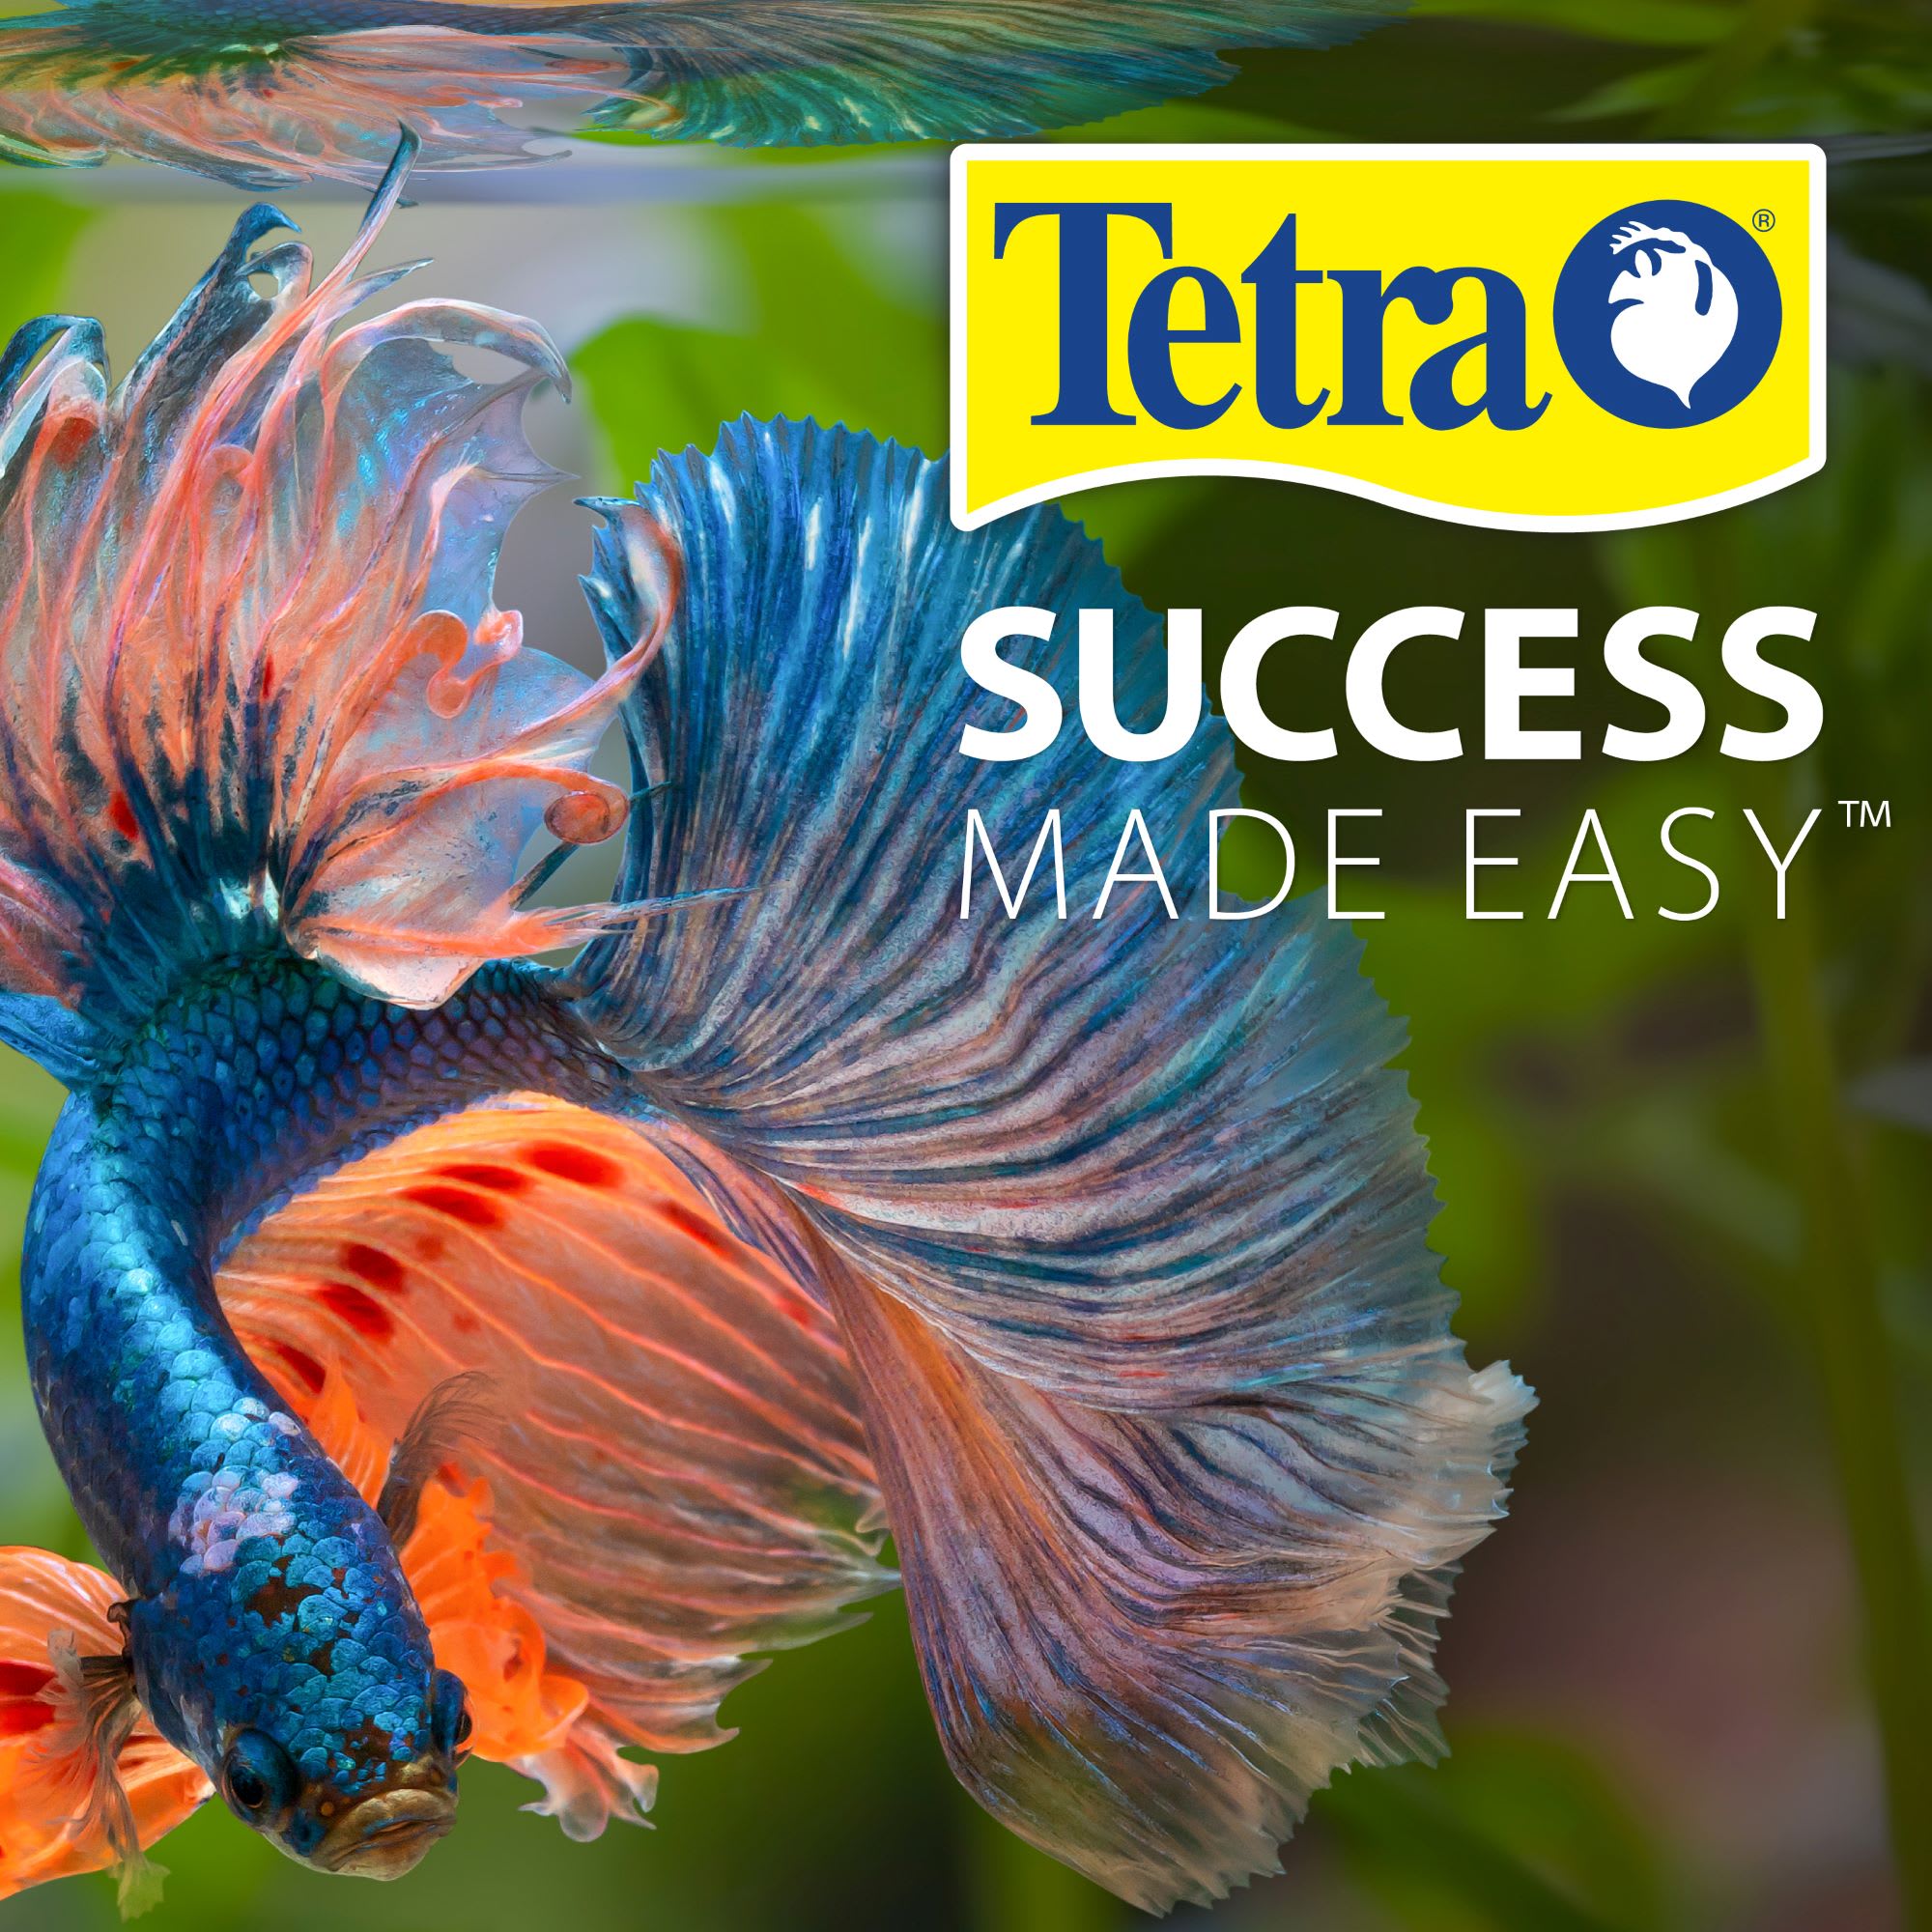 Tetra Open Glass 10 Gallon Rectangular Fish Aquarium Tank